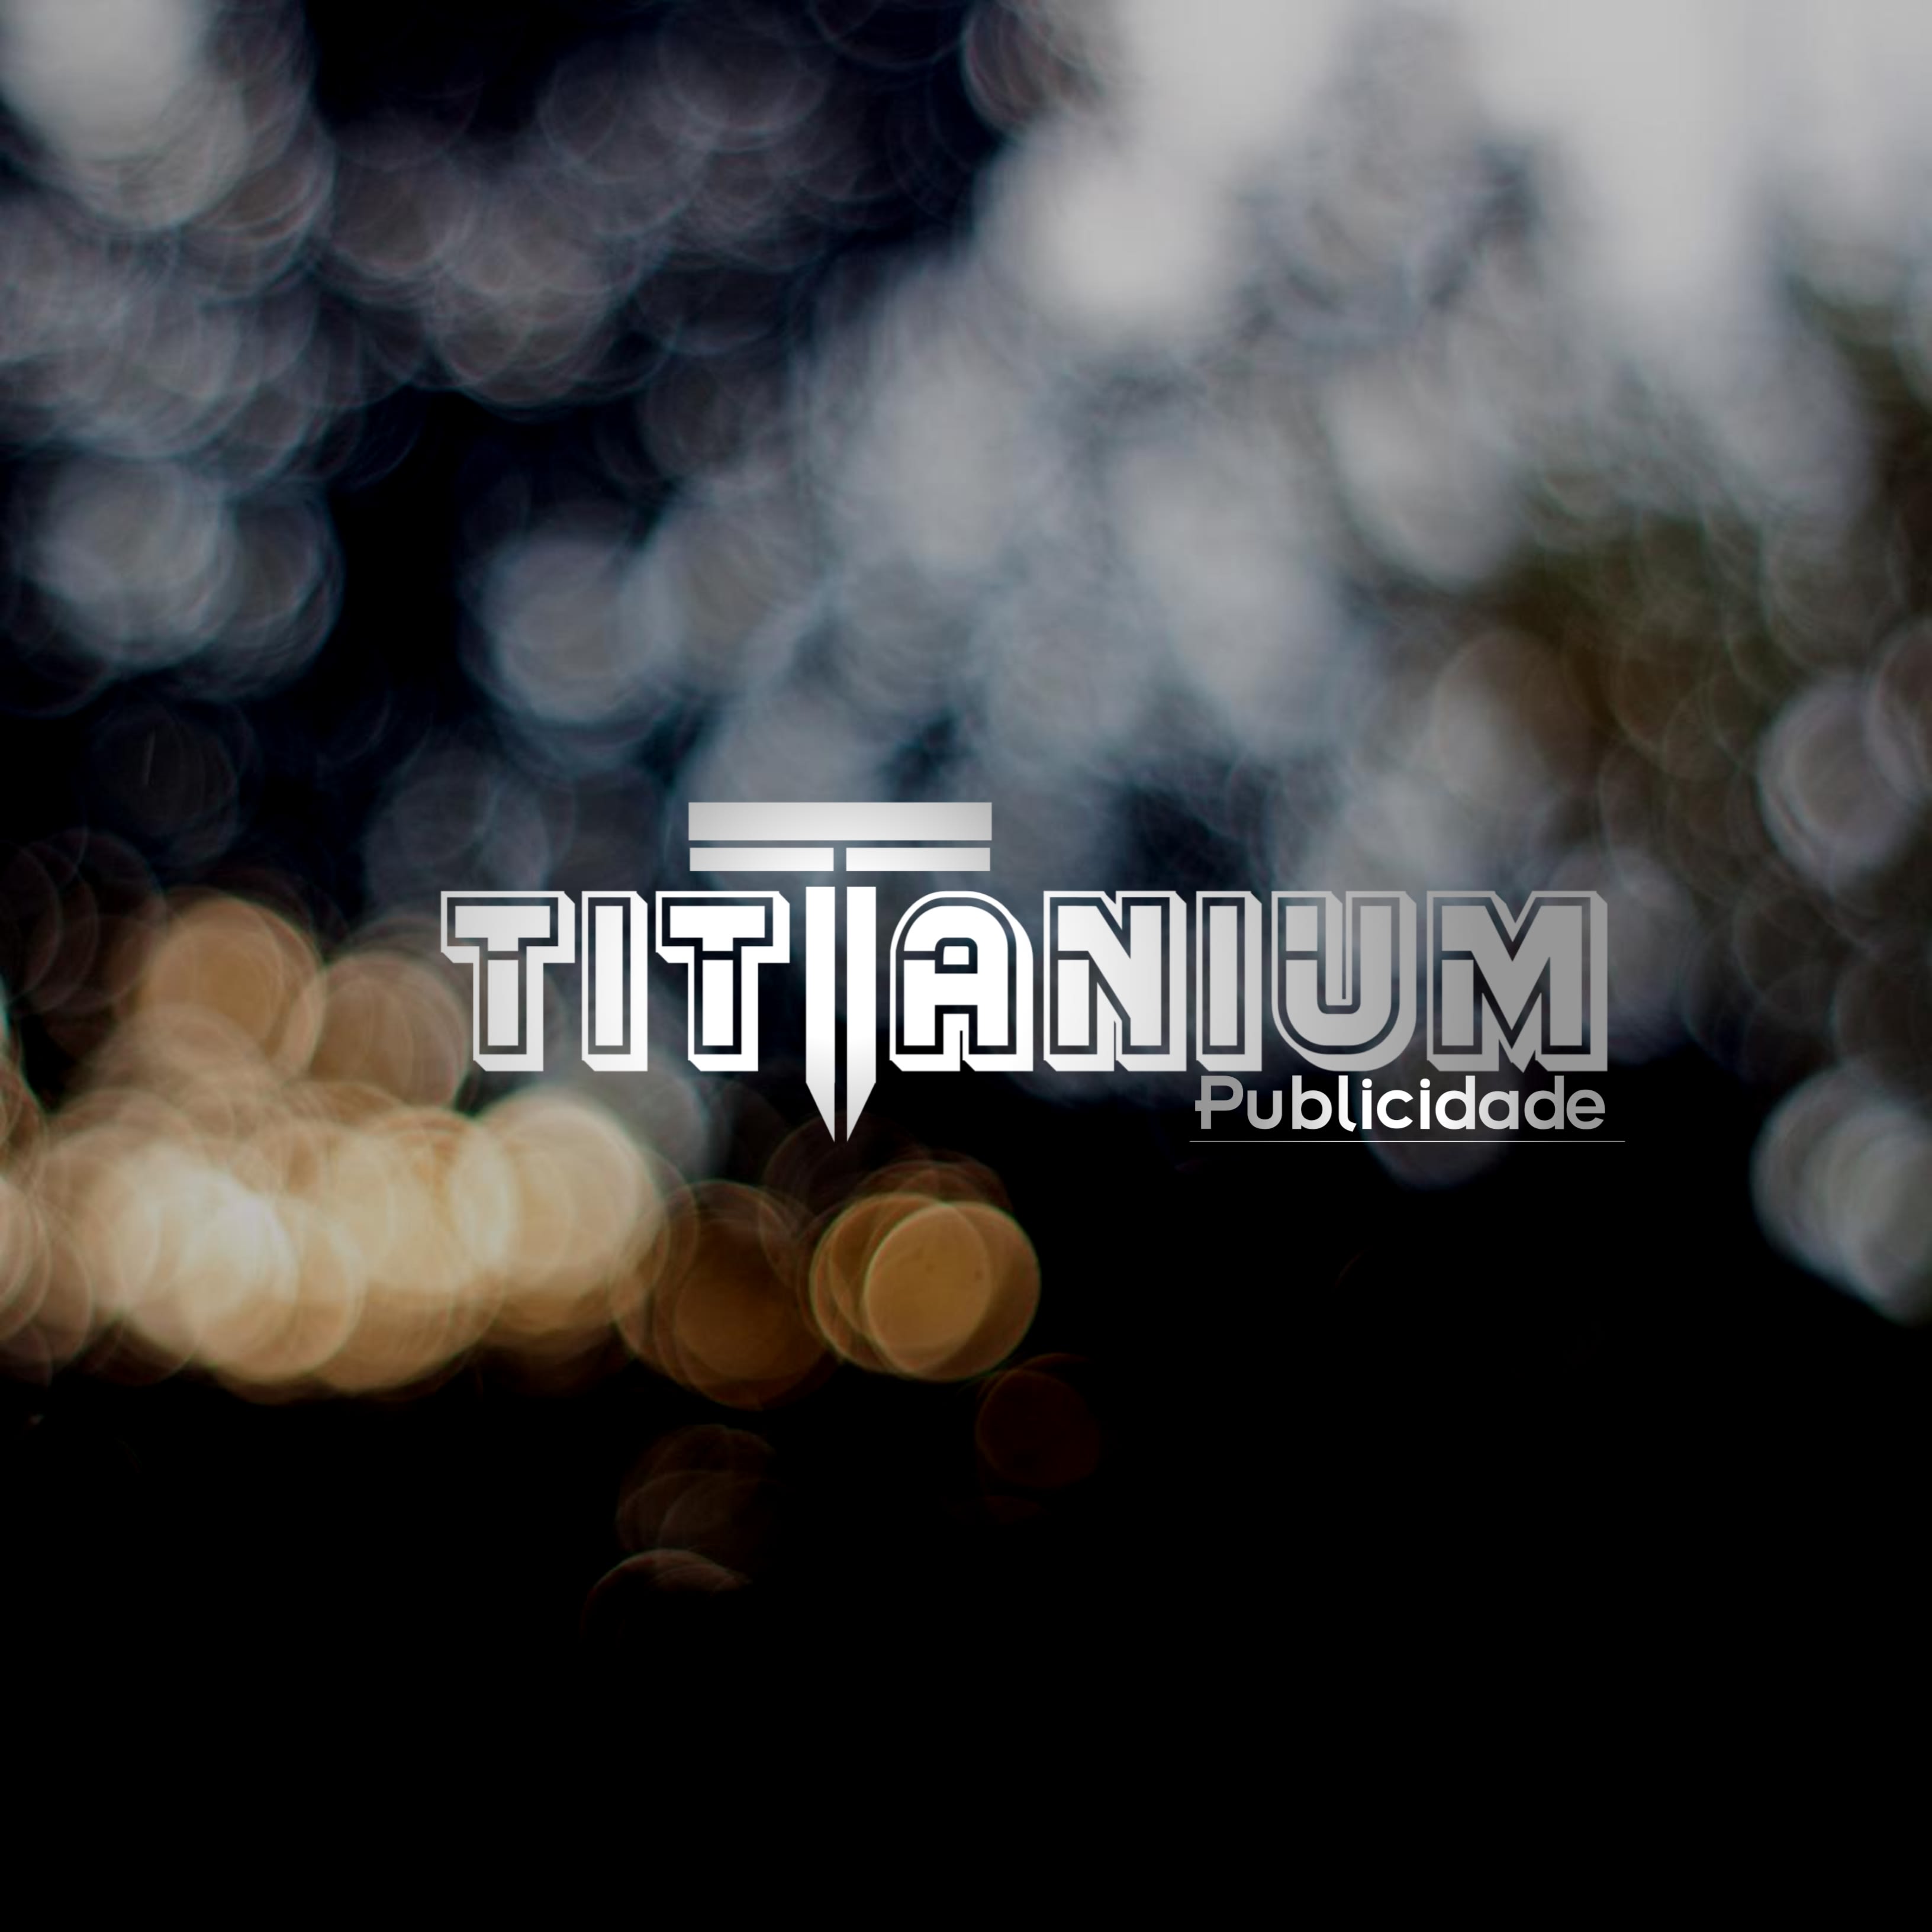 Tittanium